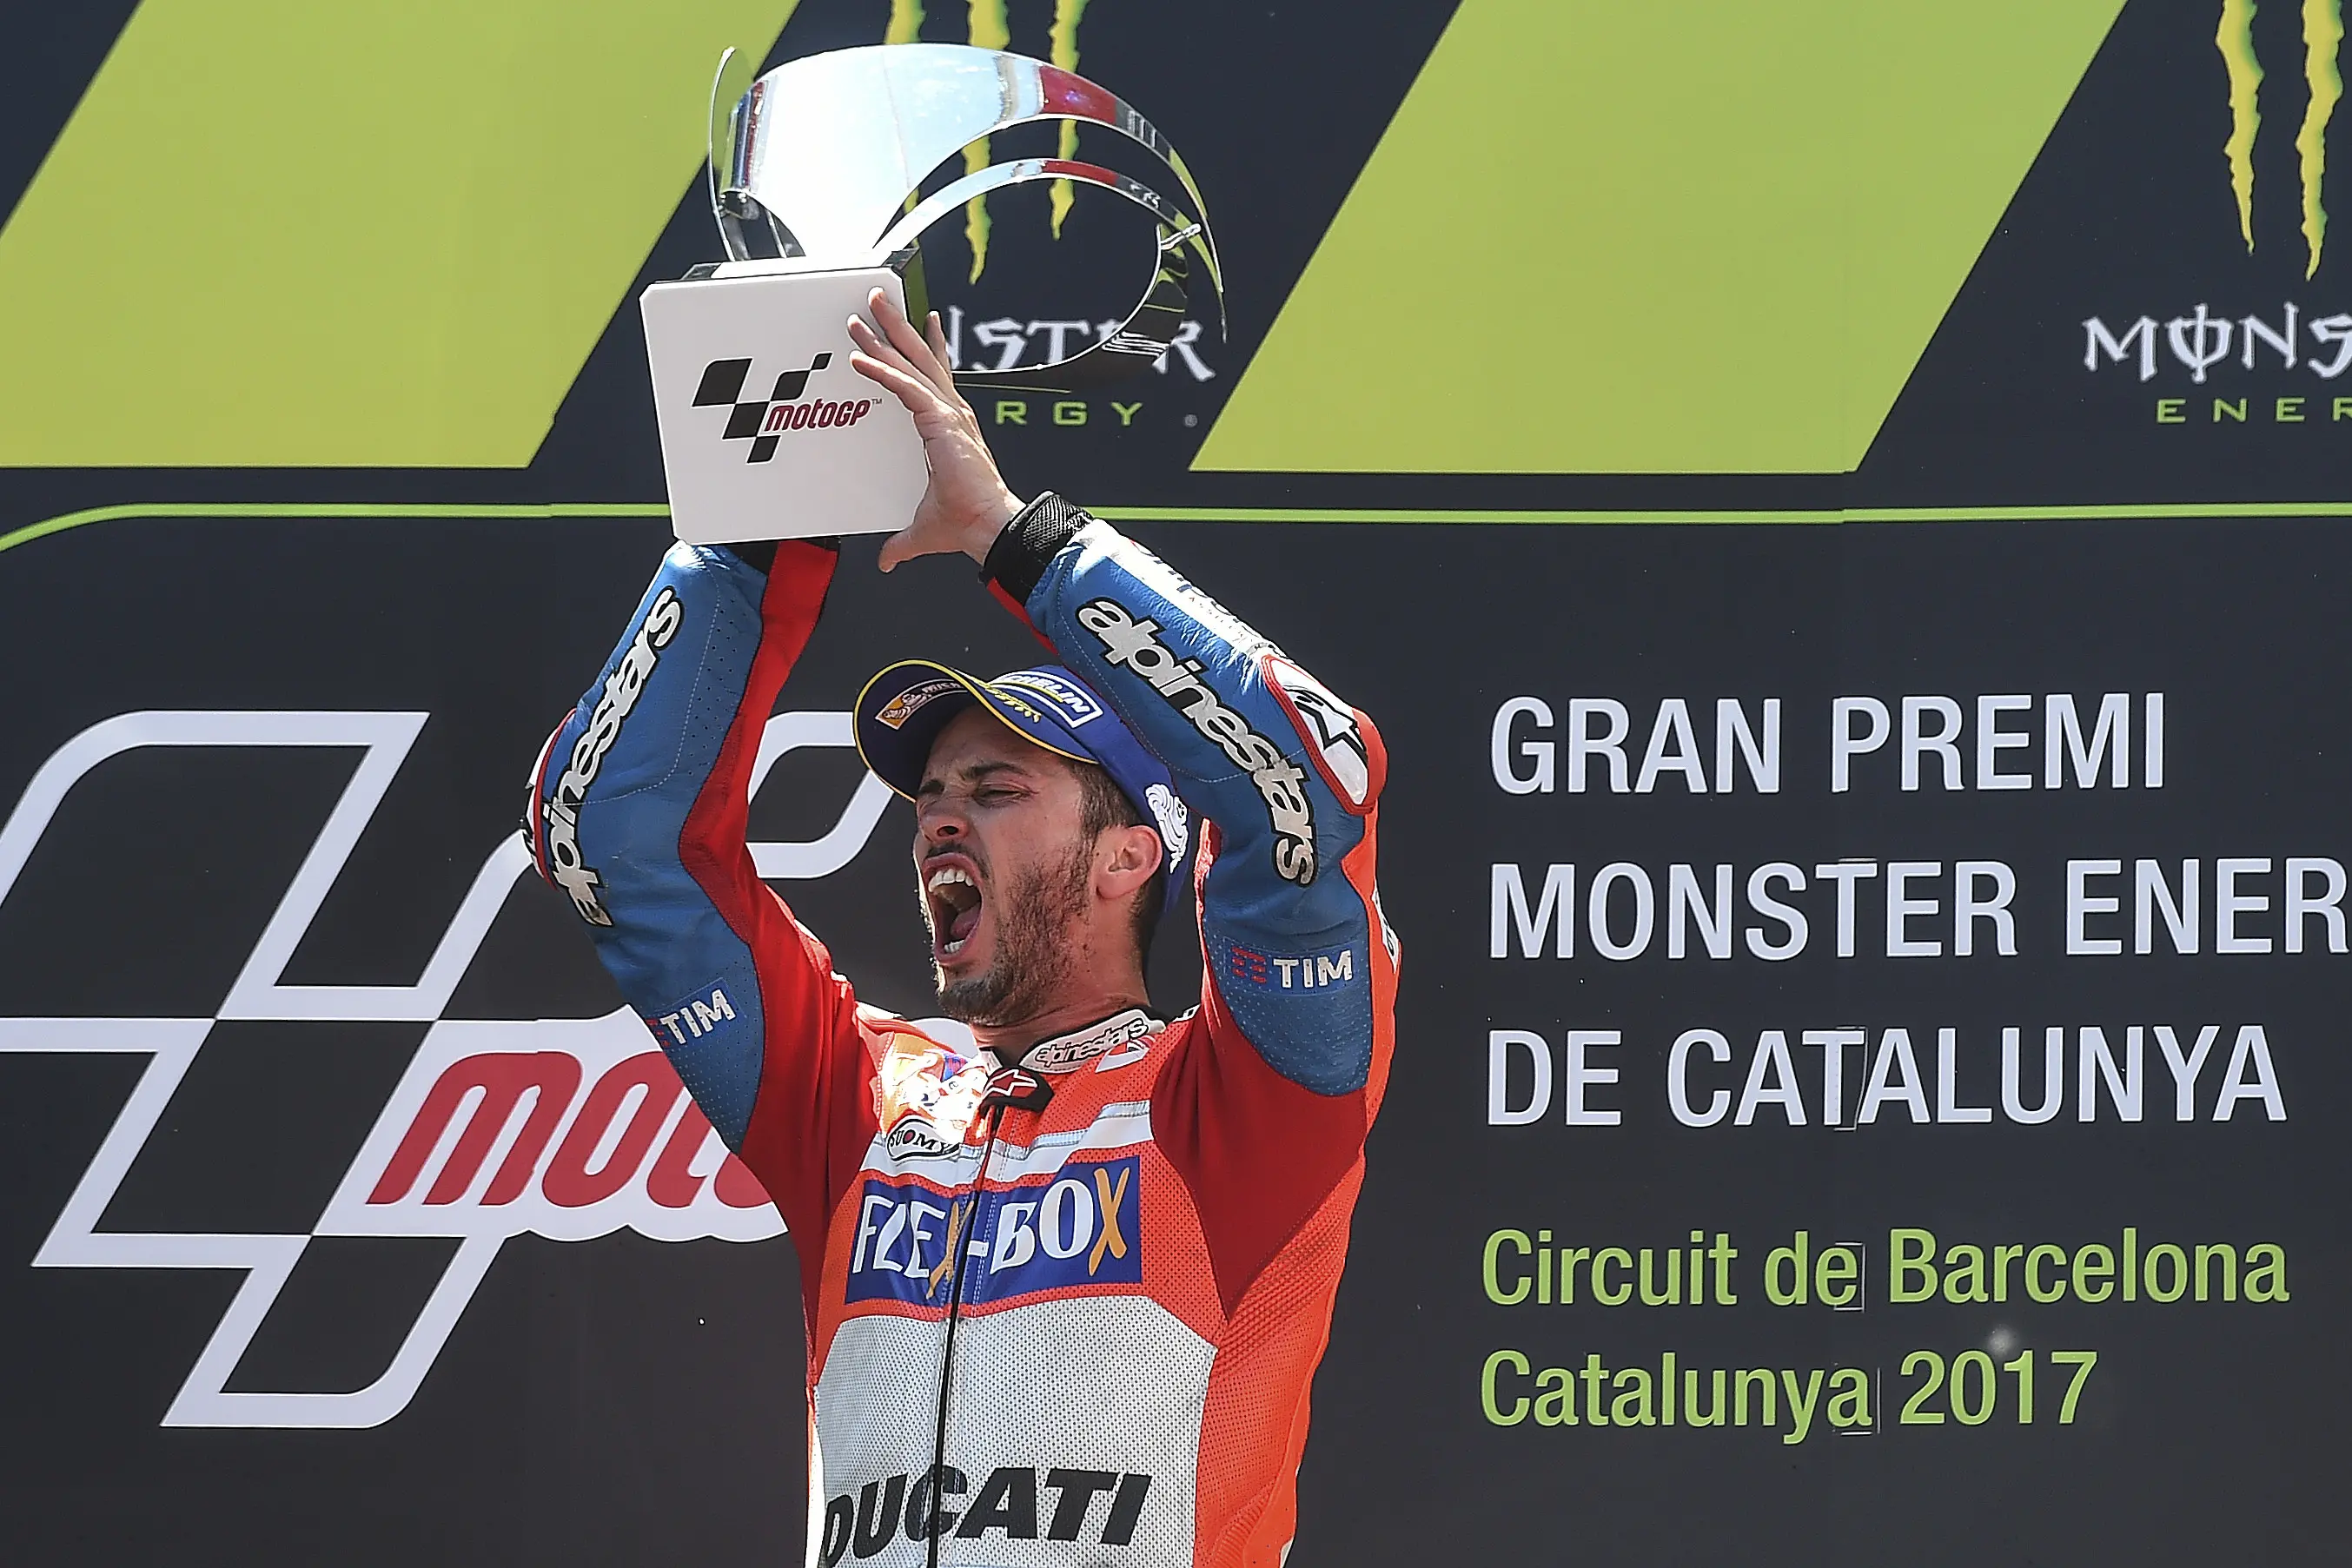 Momen saat pembalap Ducati, Andrea Dovizioso memenangkan balapan MotoGP Catalunya 2017. (Josep LAGO / AFP)